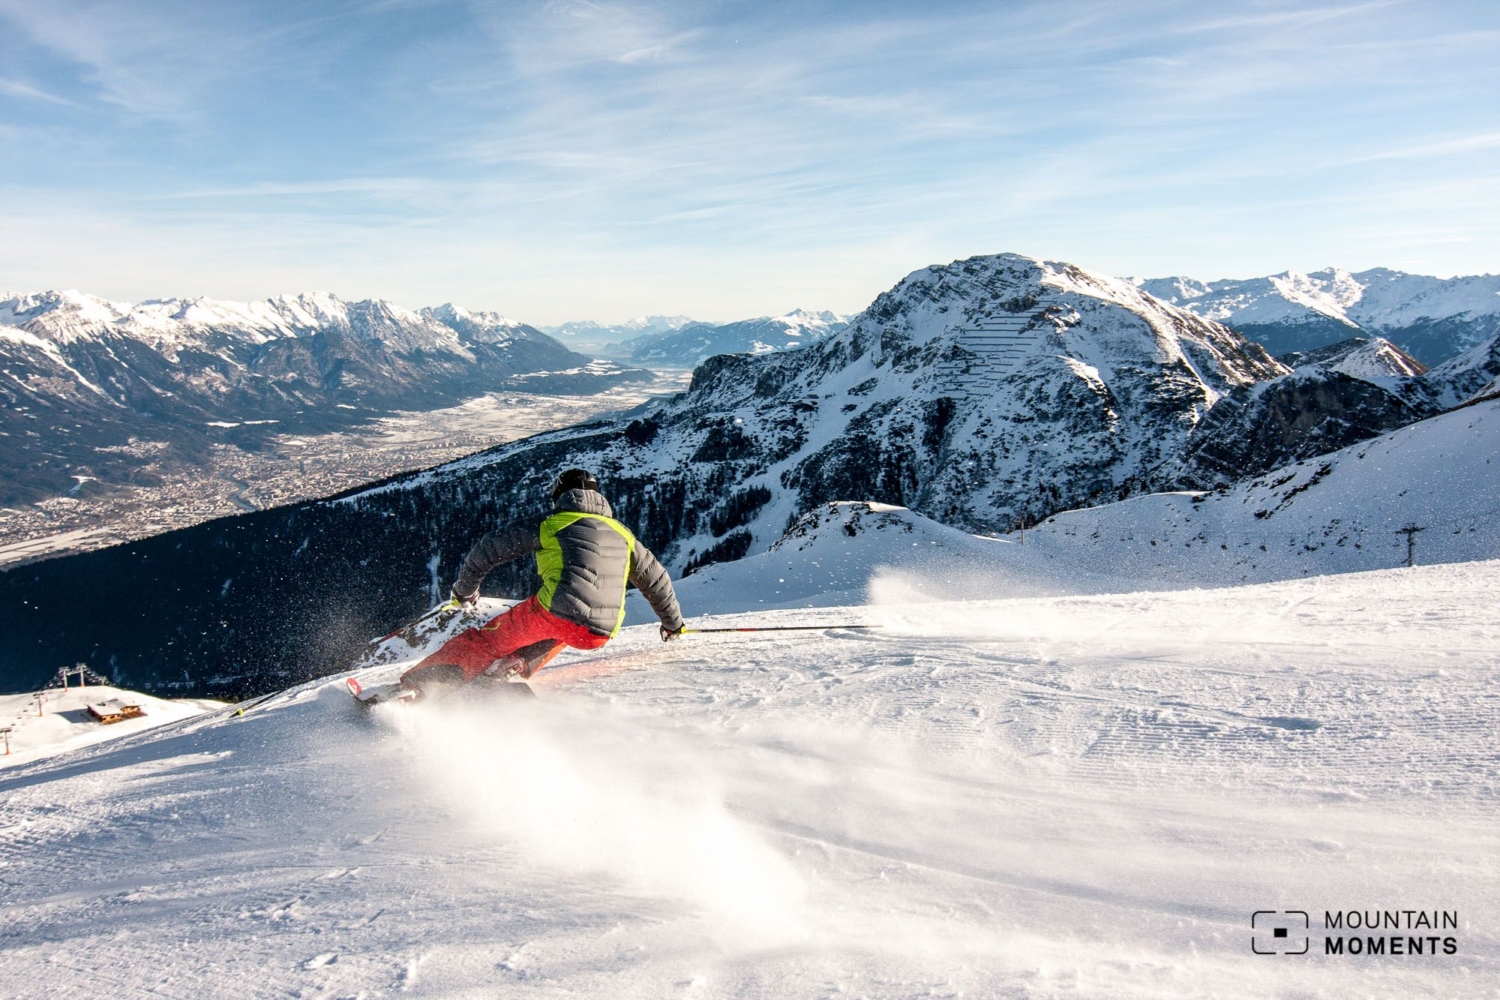 Die schönsten Skigebiete rund um Innsbruck: Die schönsten Skipisten und Aussichtspunkte für deinen perfekten Winter-Trip an Nordkette -Axamer Lizum – Stubaier Gletscher